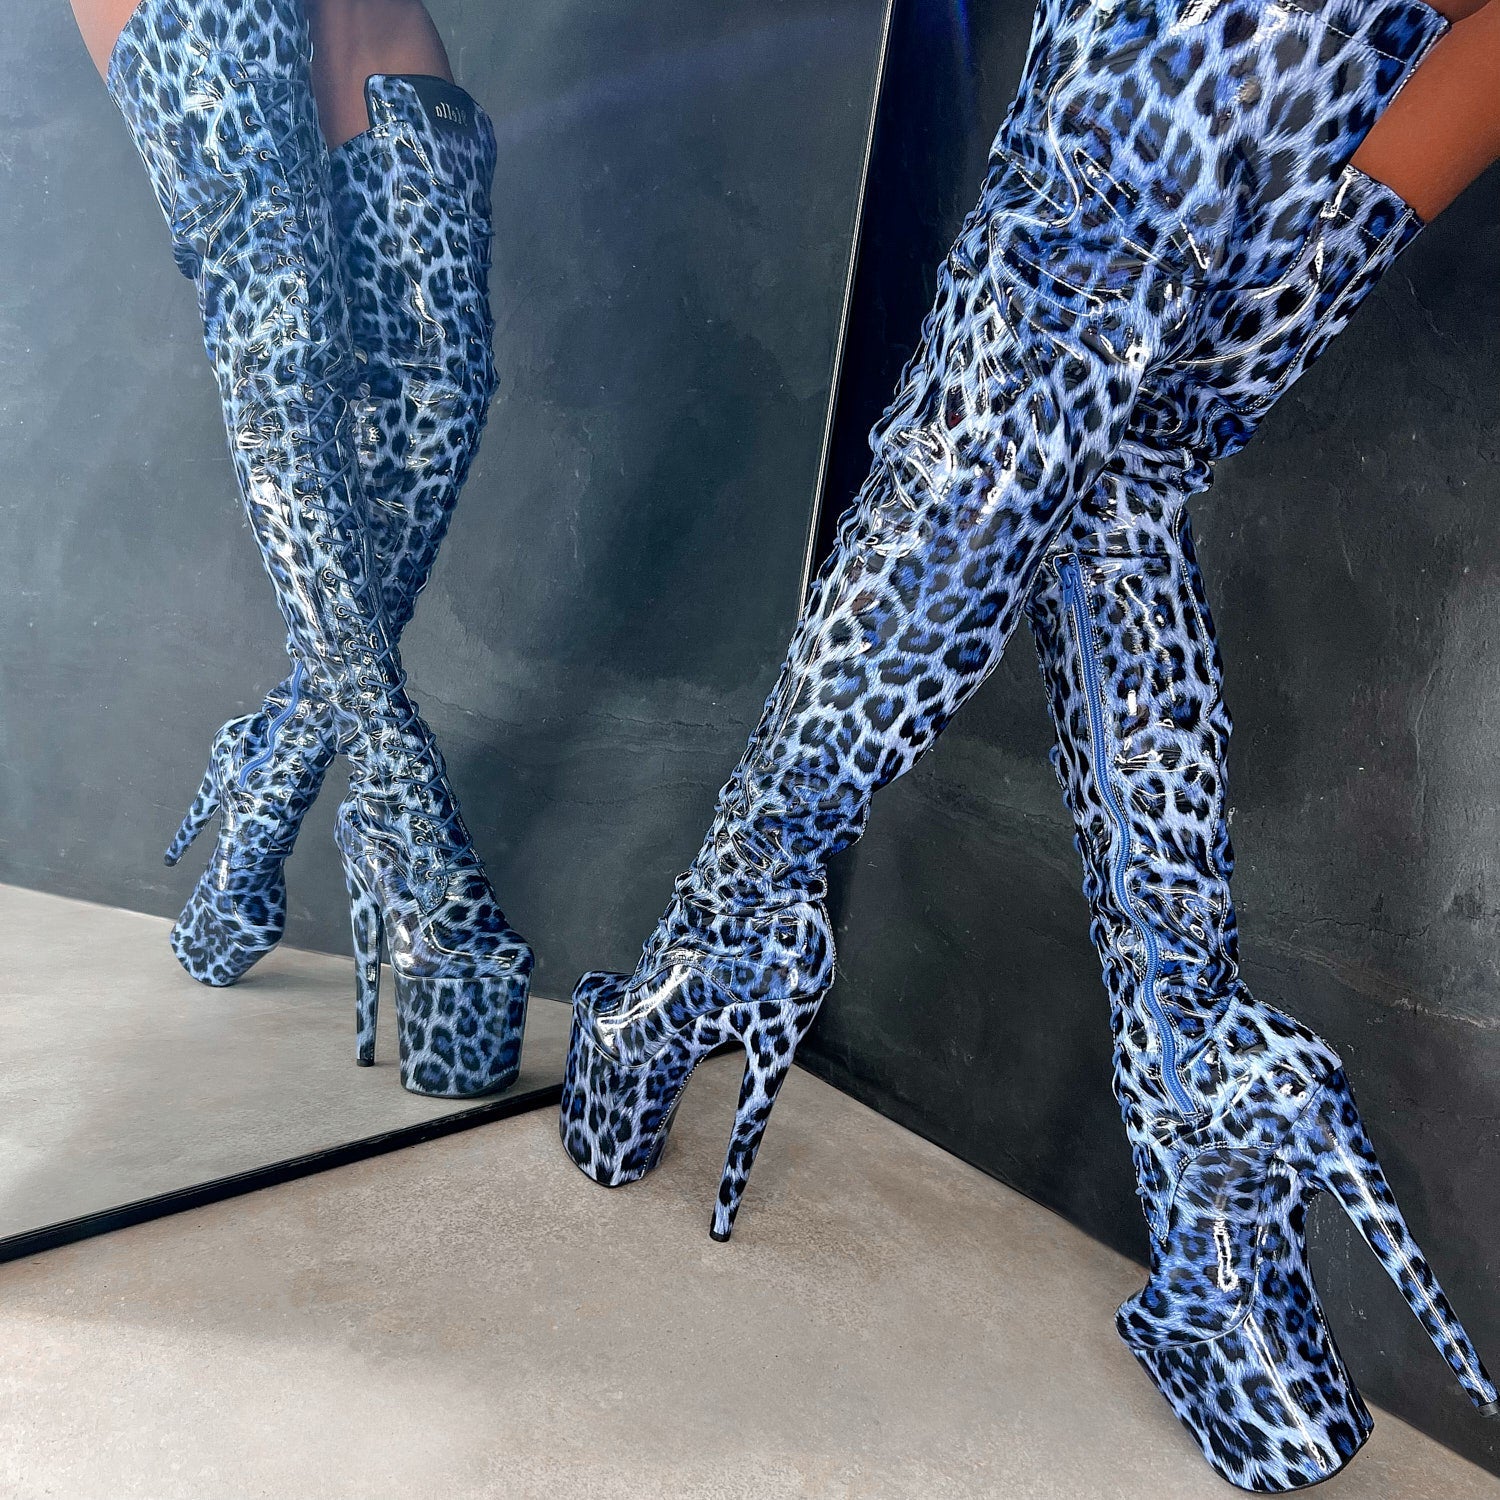 Blue Leopard Thigh High - 8 INCH, stripper shoe, stripper heel, pole heel, not a pleaser, platform, dancer, pole dance, floor work